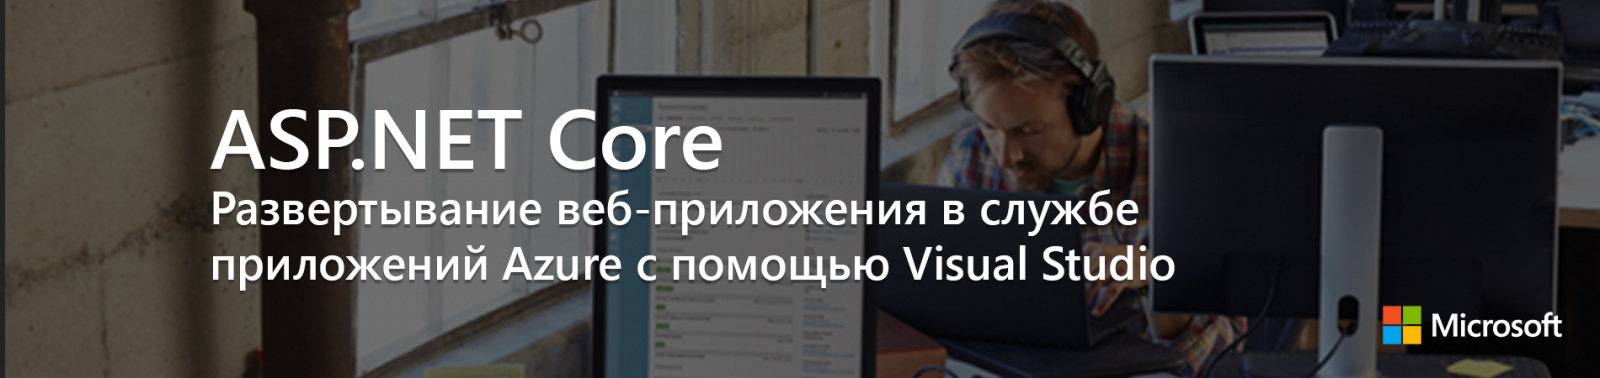 ASP.NET Core: Развертывание веб-приложения в службе приложений Azure с помощью Visual Studio - 1